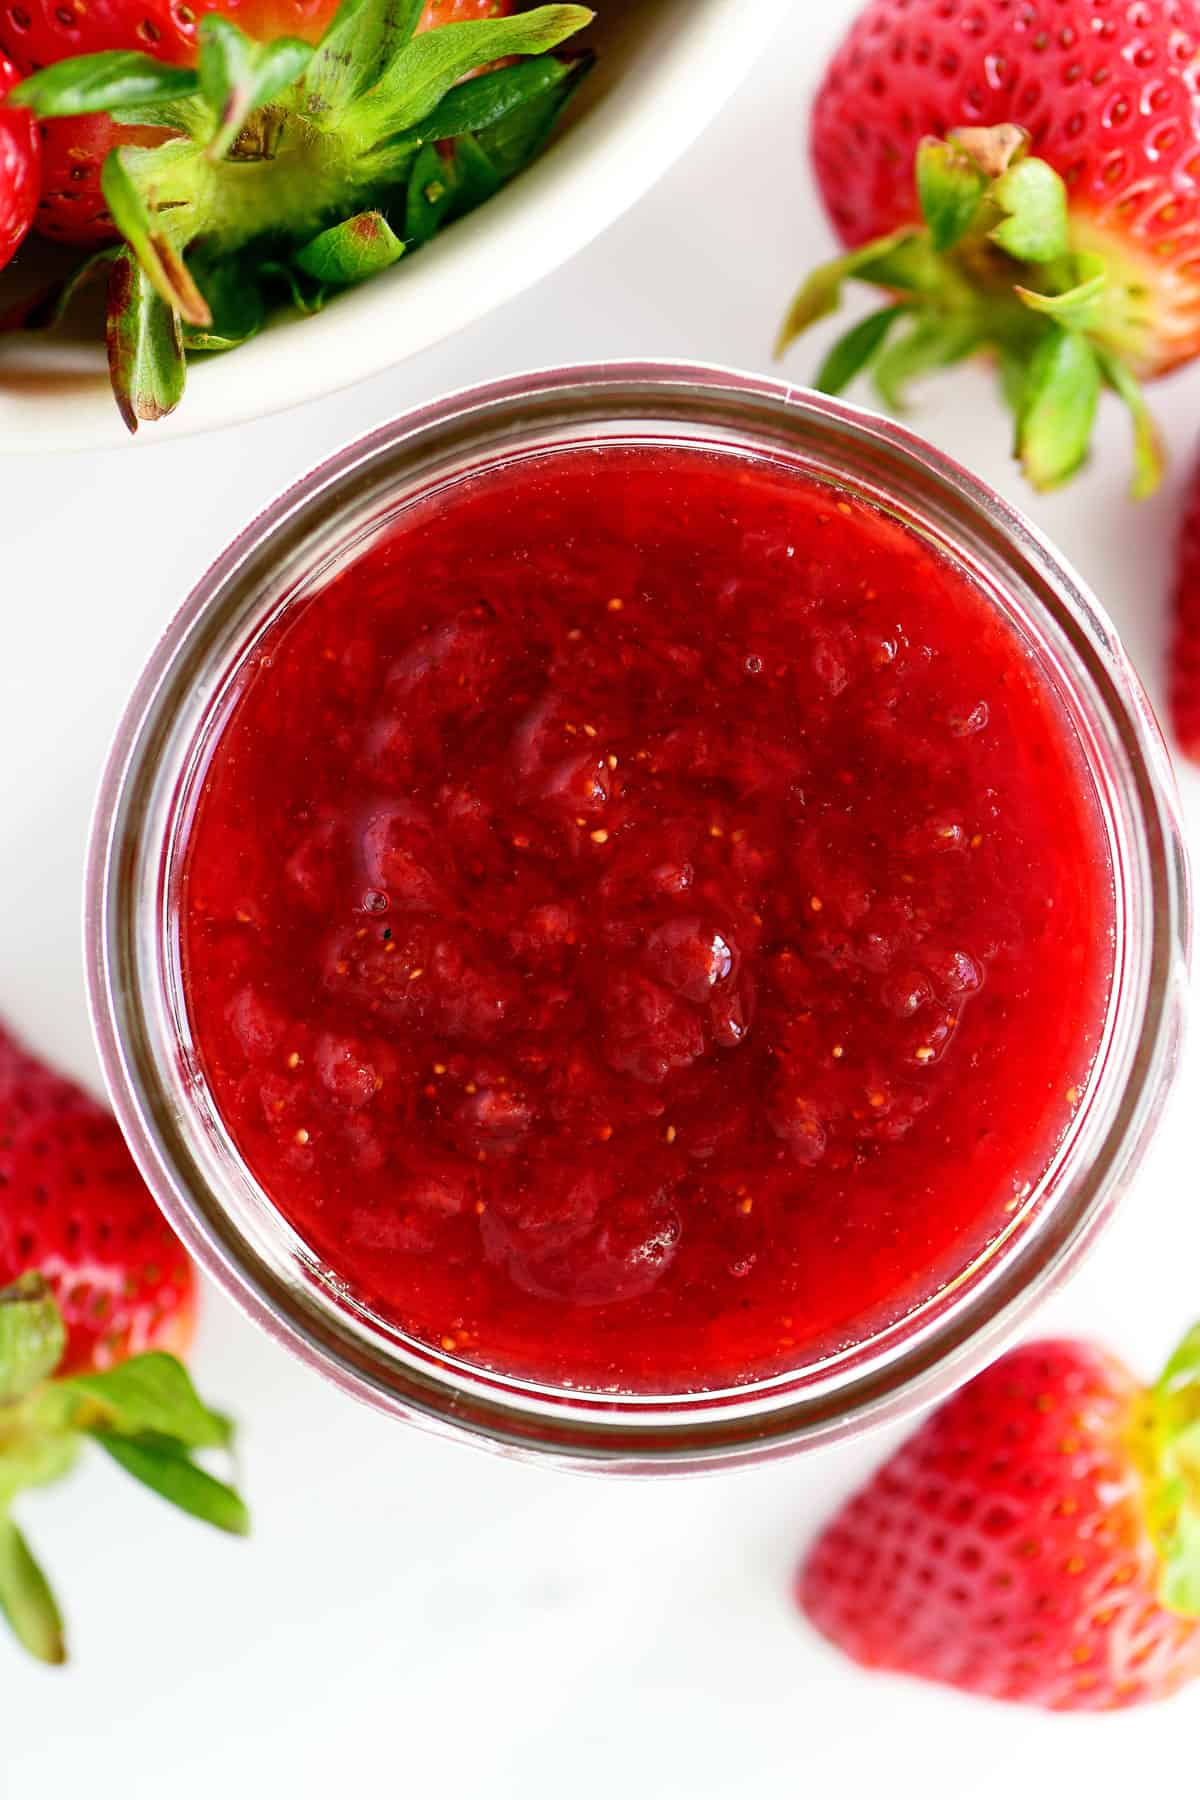 Strawberry glaze in a small glass jar.